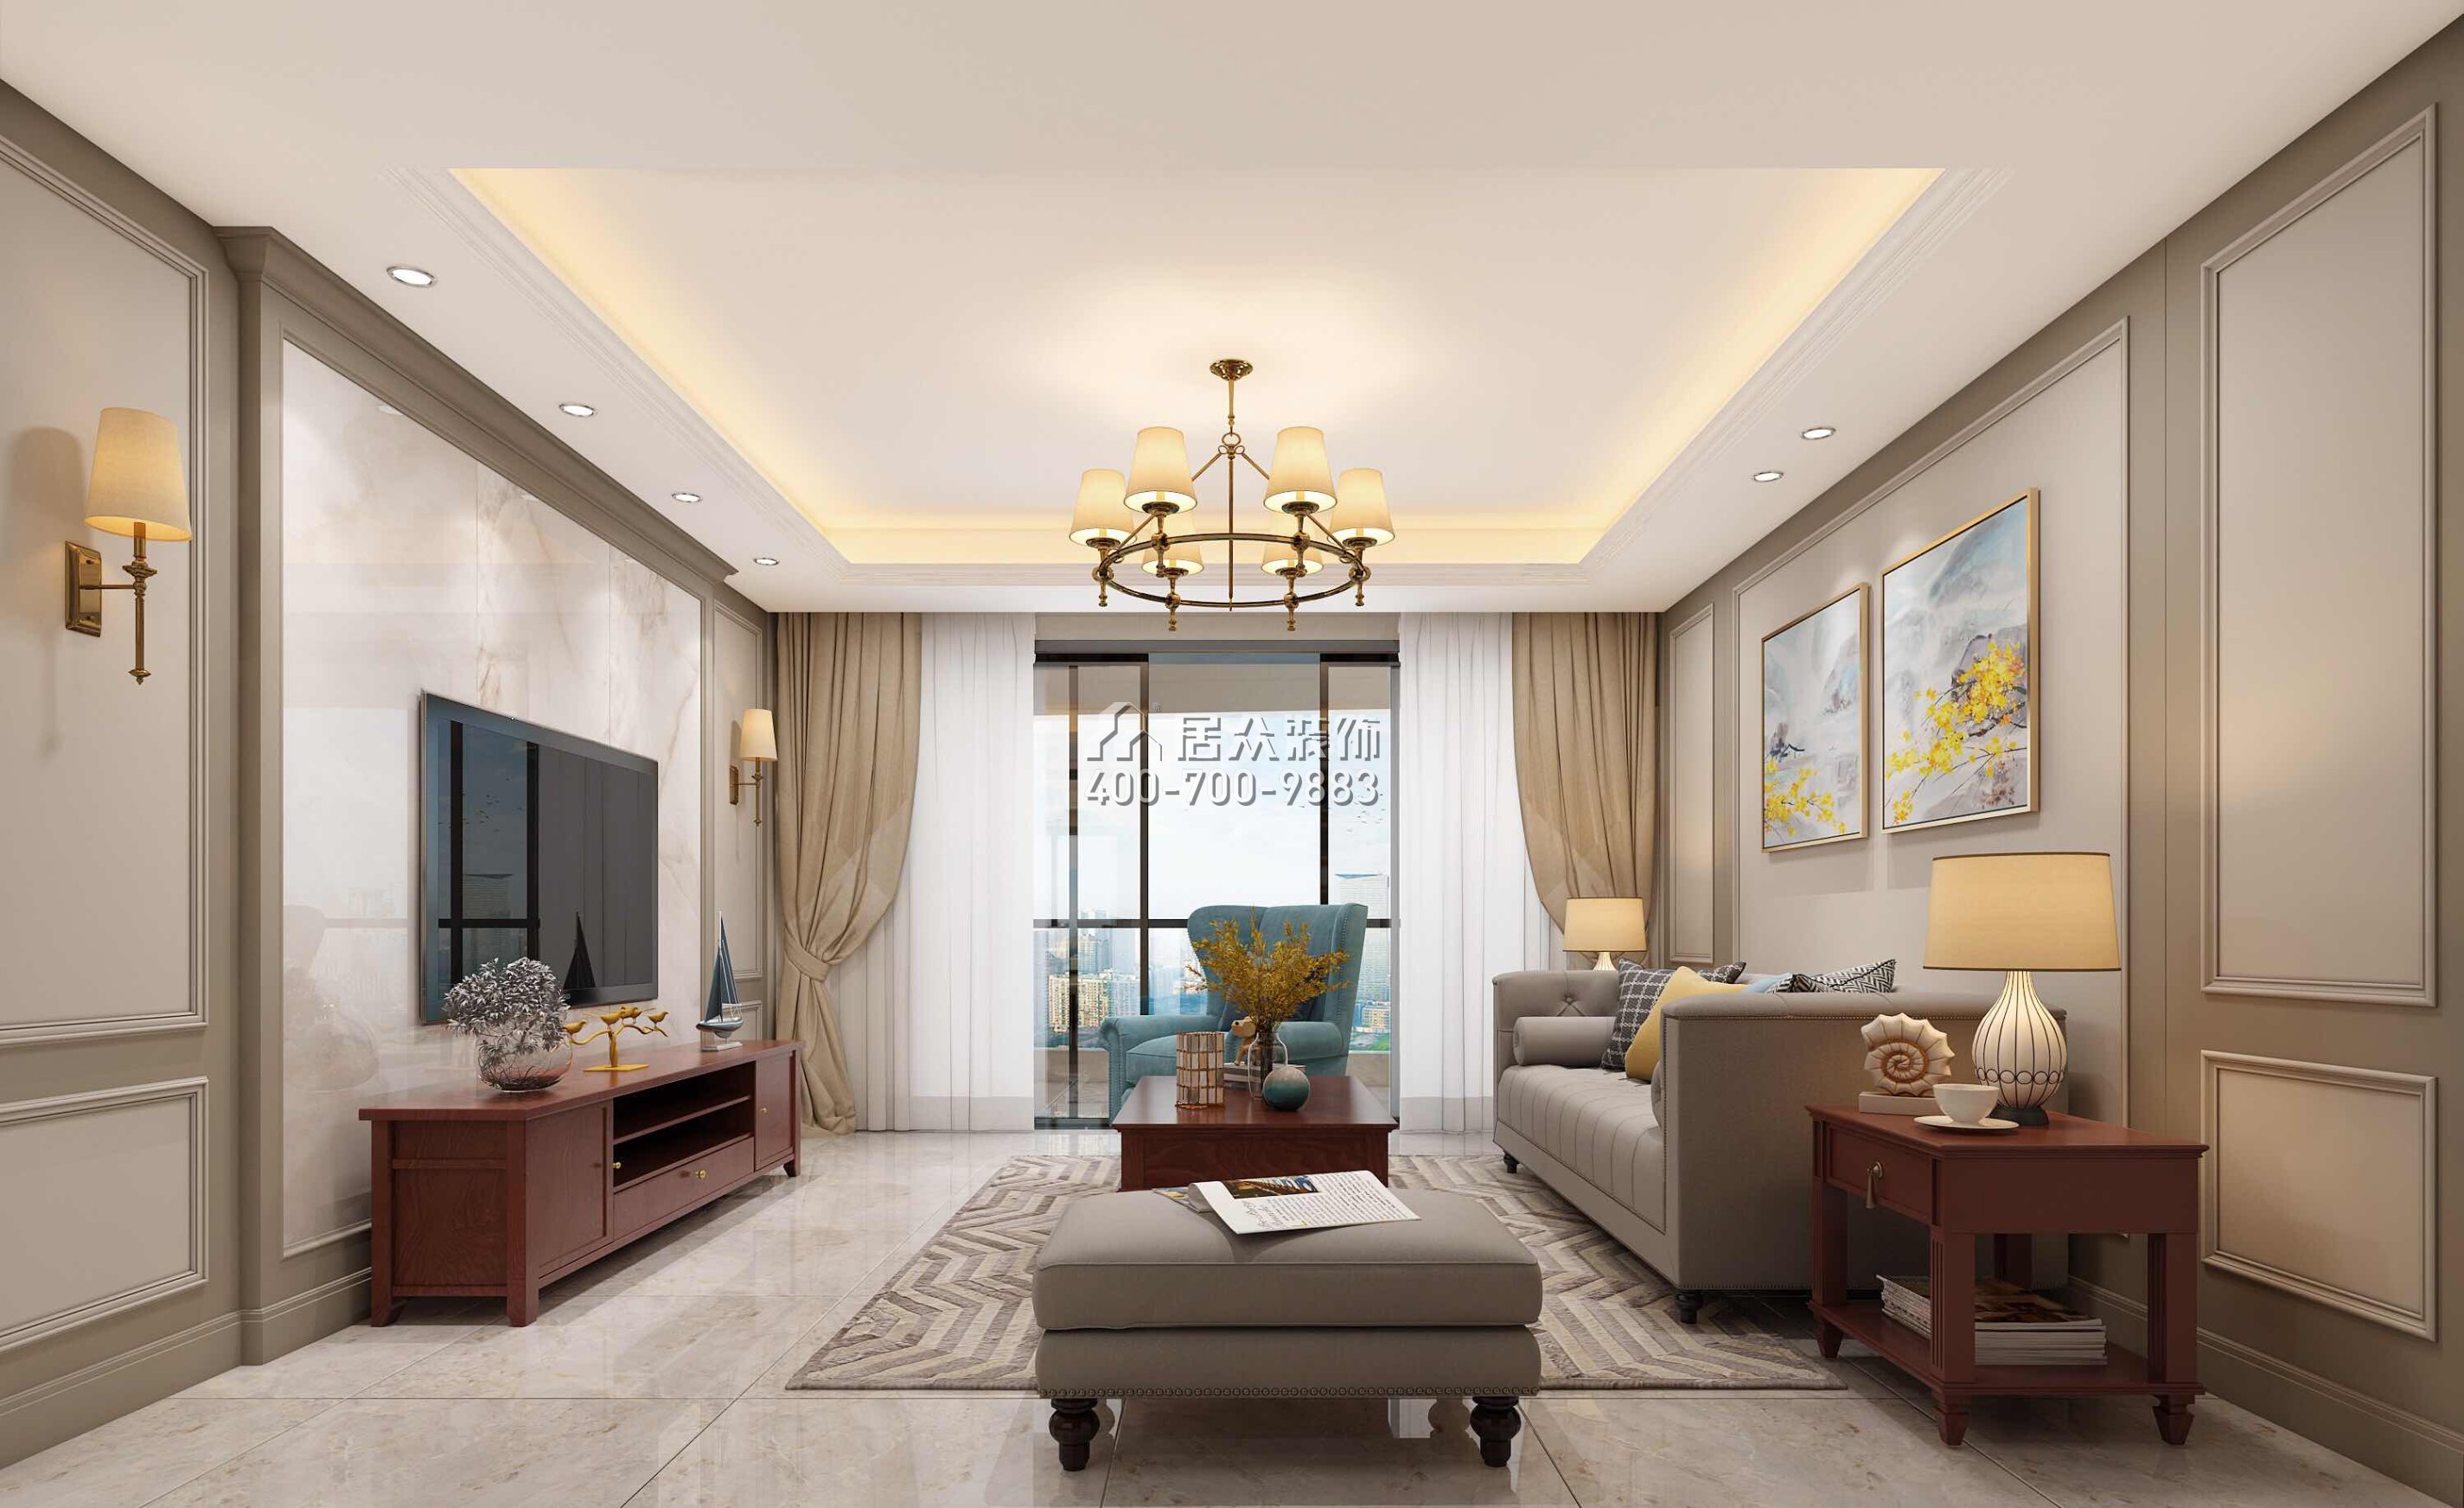 冠城世家145平方米美式風格平層戶型客廳裝修效果圖